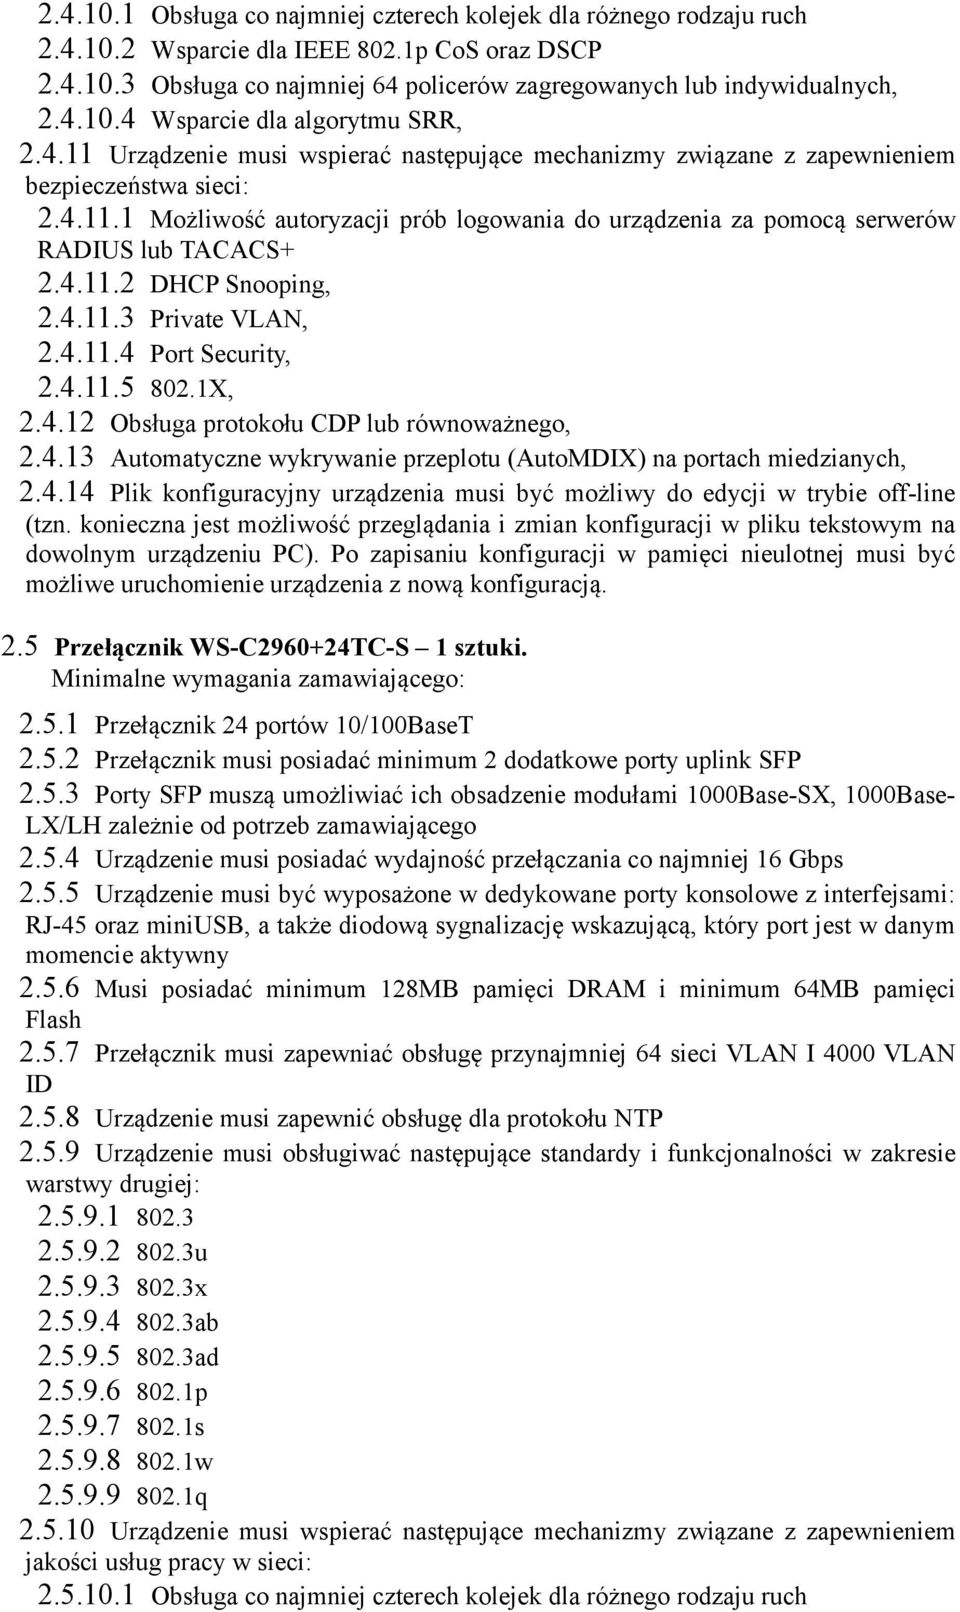 4.11.2 DHCP Snooping, 2.4.11.3 Private VLAN, 2.4.11.4 Port Security, 2.4.11.5 802.1X, 2.4.12 Obsługa protokołu CDP lub równoważnego, 2.4.13 Automatyczne wykrywanie przeplotu (AutoMDIX) na portach miedzianych, 2.